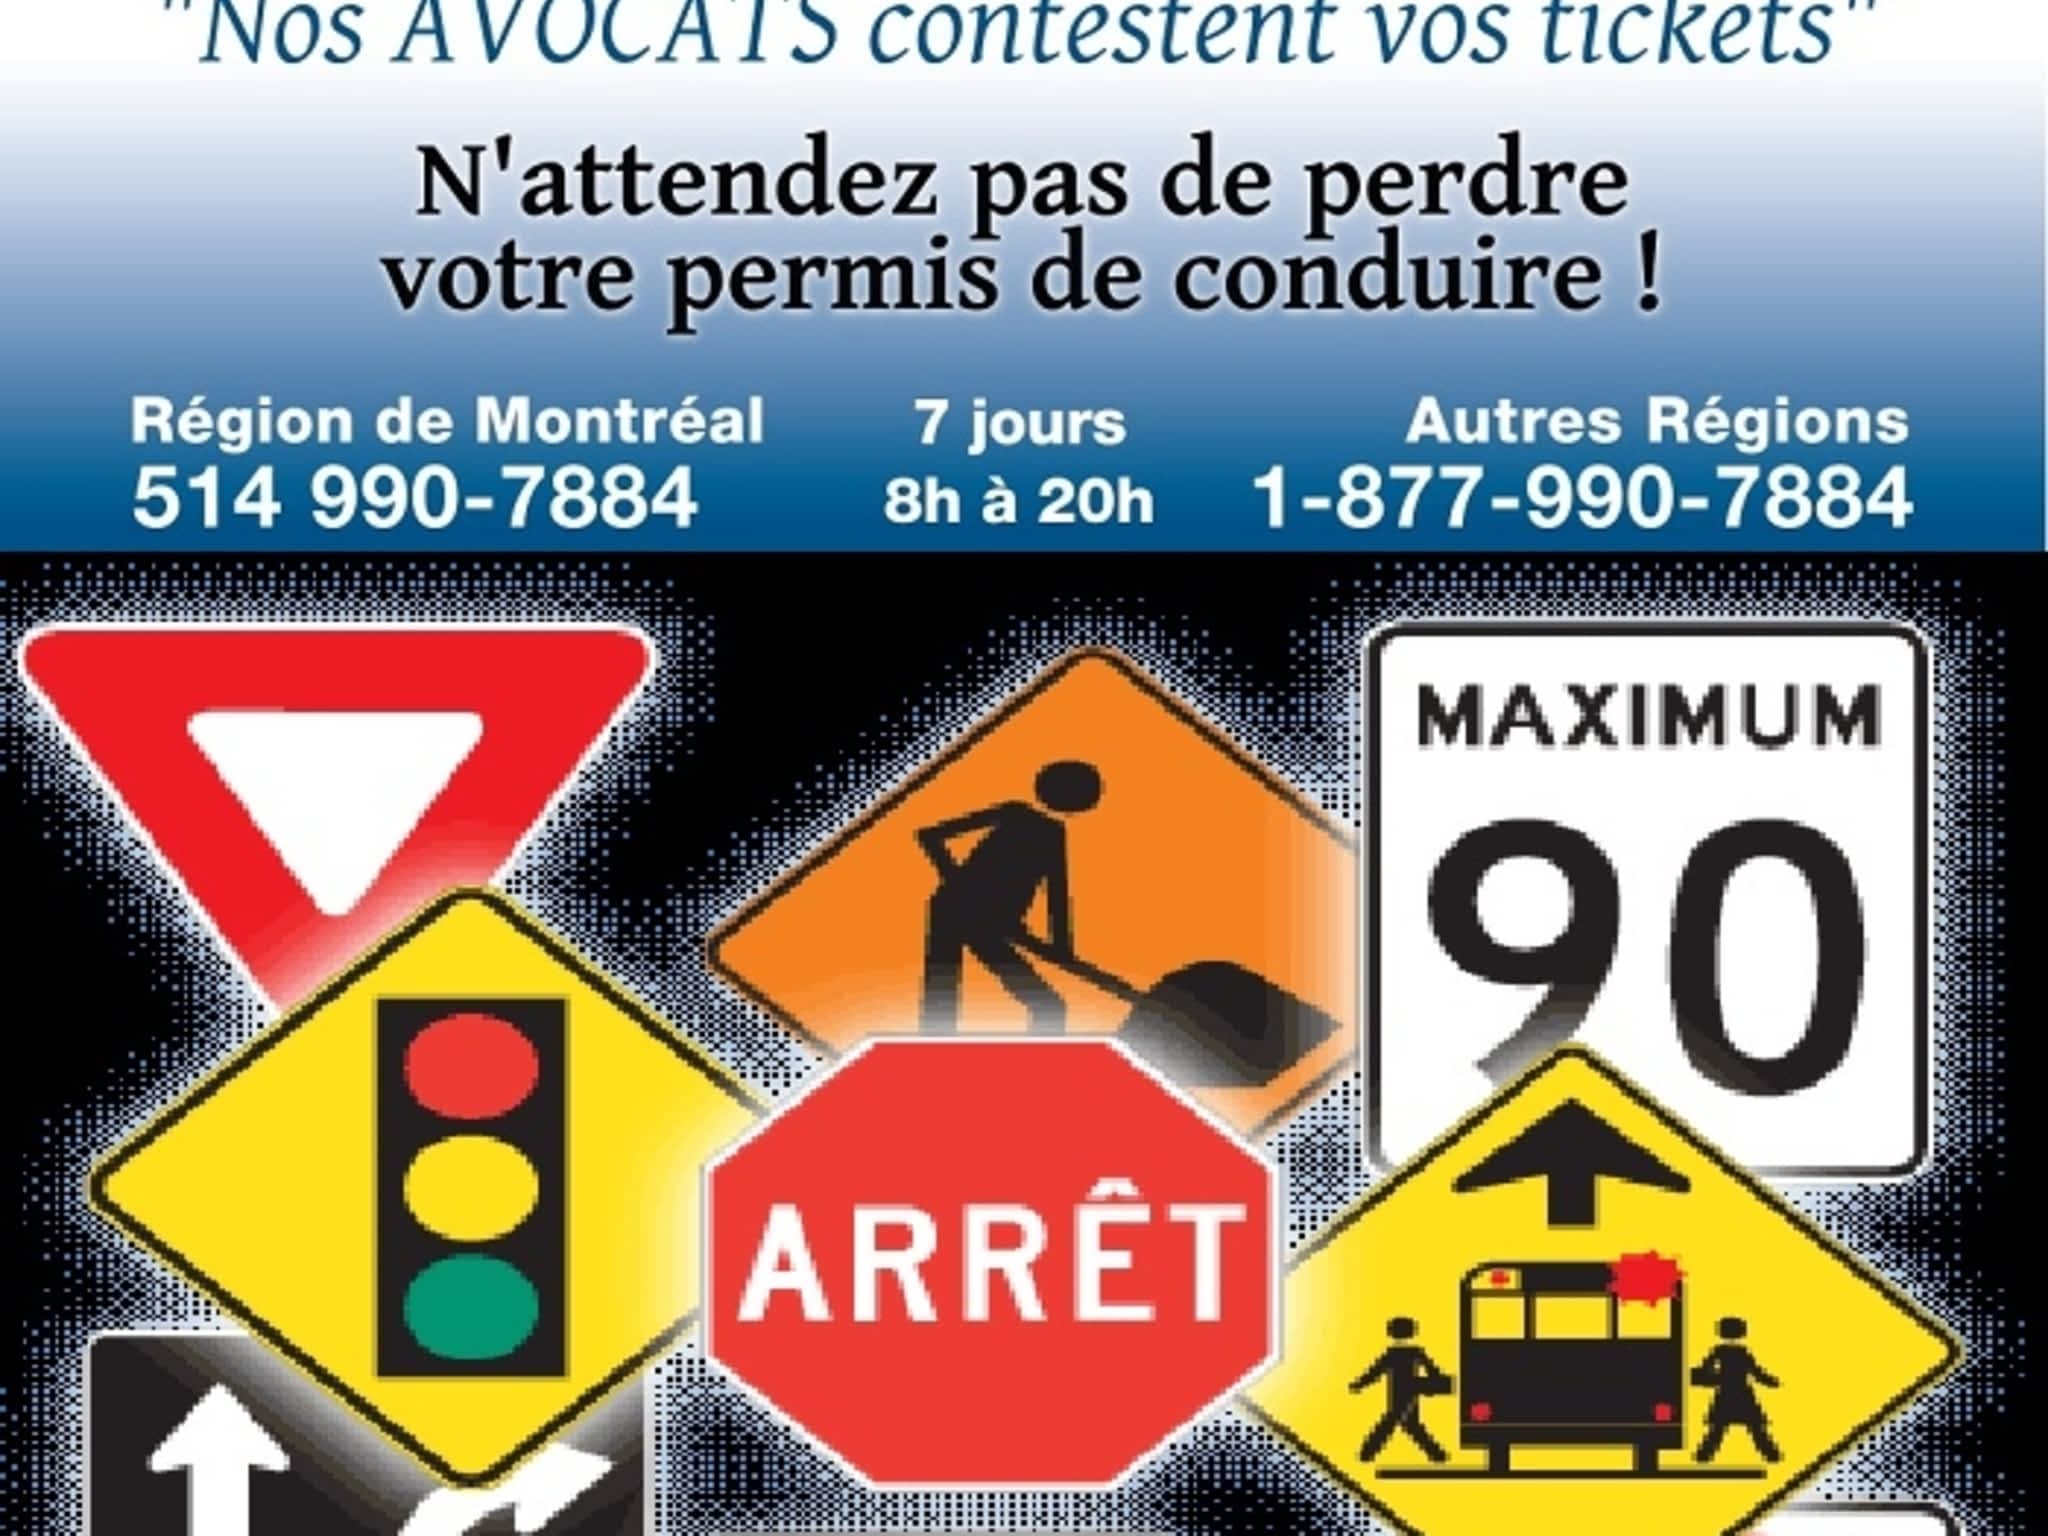 photo Solution Ticket Avocat | Droit Criminel et Pénal | Partout au Québec